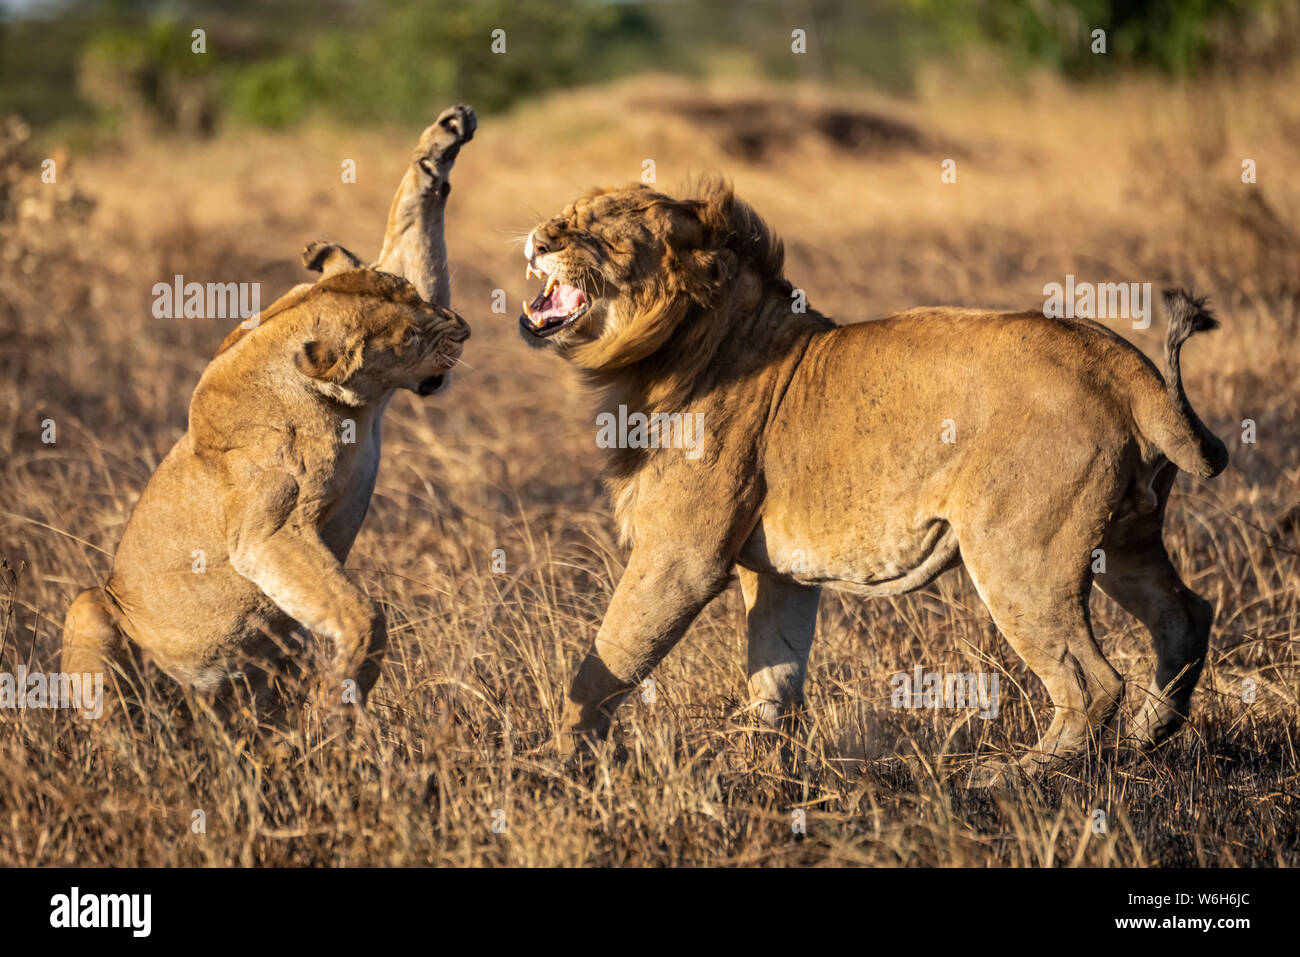 Una leonessa (Panthera leo) sta per schiaffare un leone maschio con la zampa dopo l'accoppiamento. Entrambi hanno cappotti d'oro e sono in piedi su una patch di bruciato ... Foto Stock